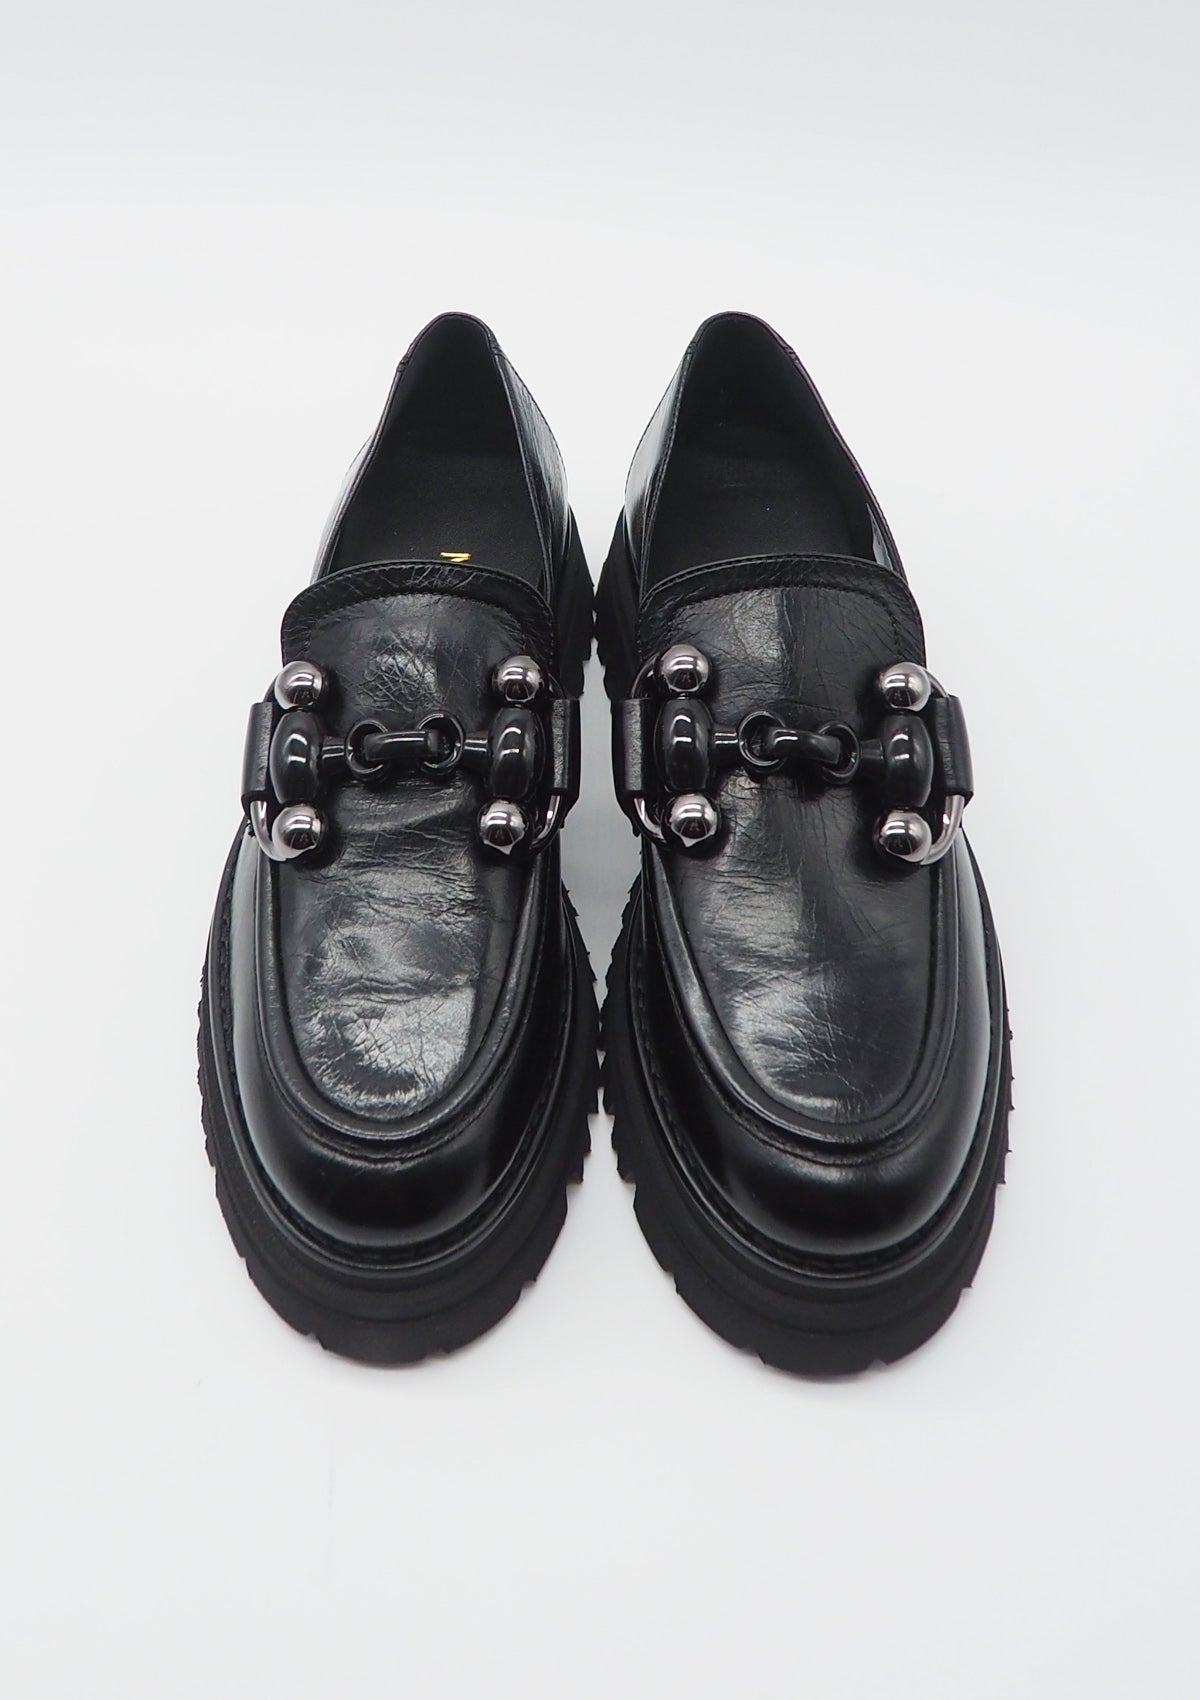 Damen Loafer aus Glattleder in Schwarz - Absatz 3cm Damen Loafers & Schnürer Maripé